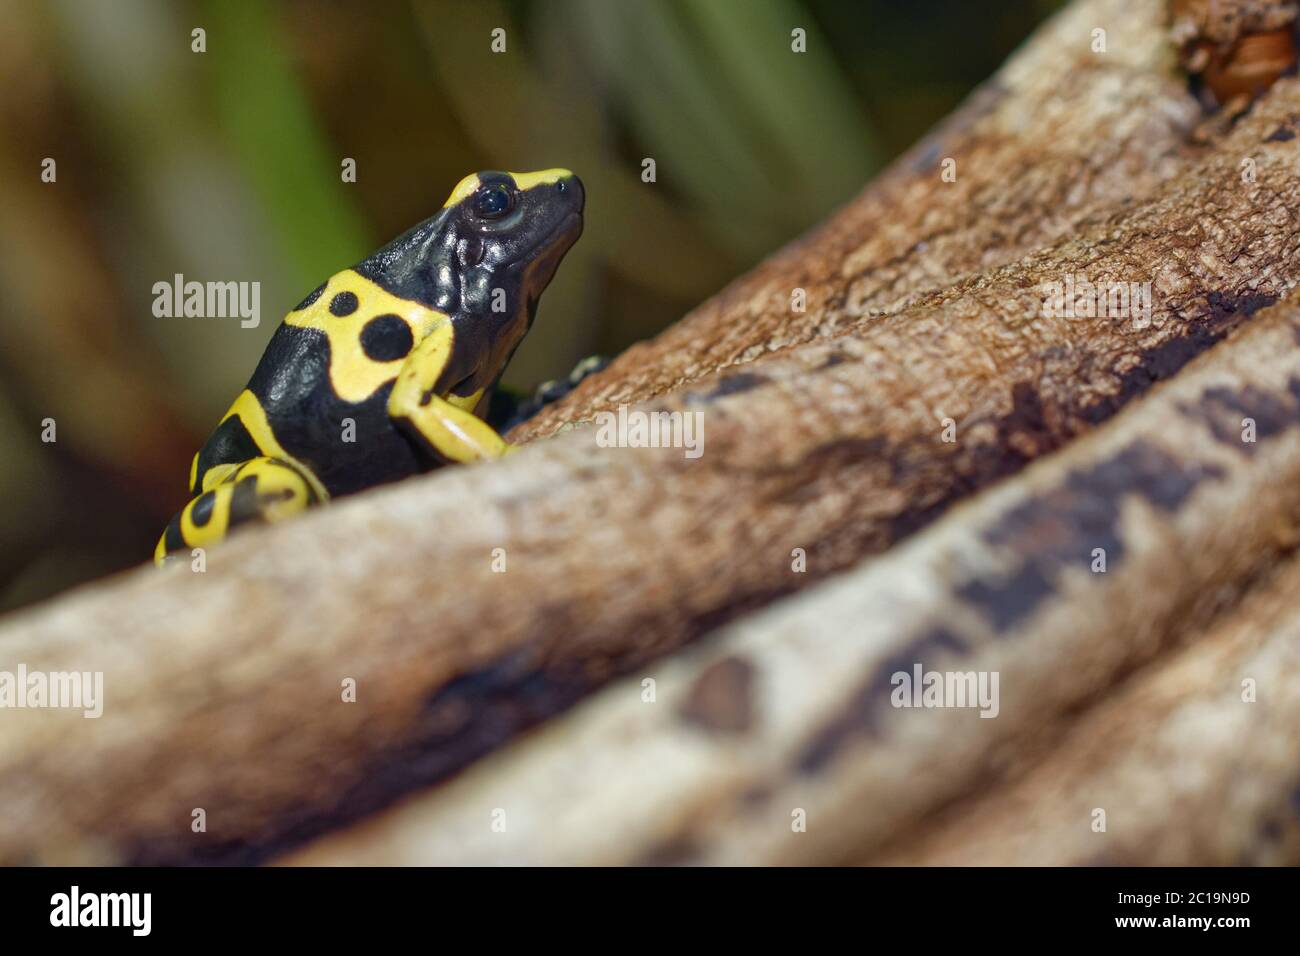 Yellow-banded poison dart frog - Dendrobates leucomelas Stock Photo